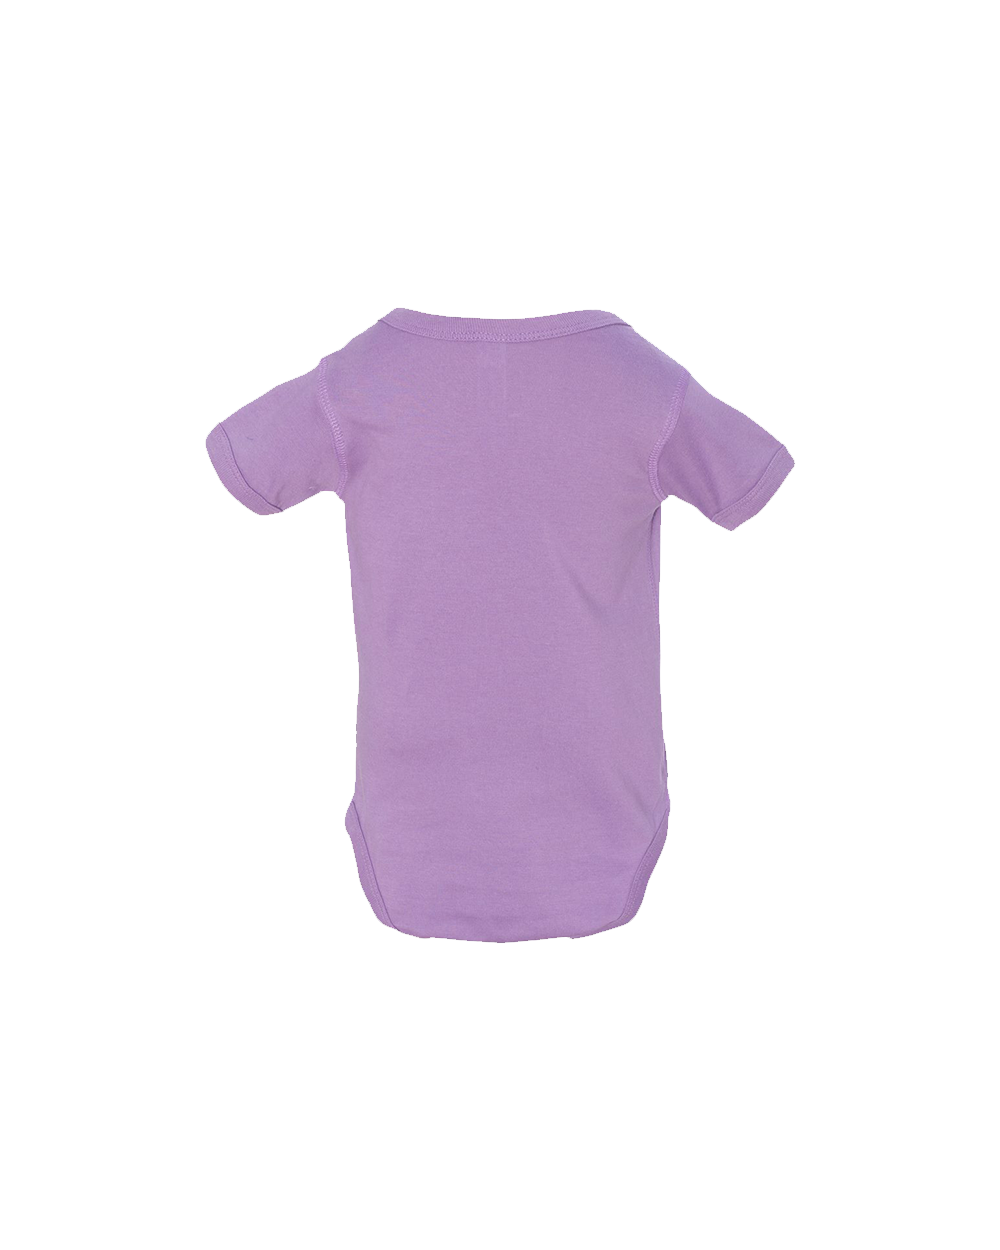 RKFD onesie (Lavender)